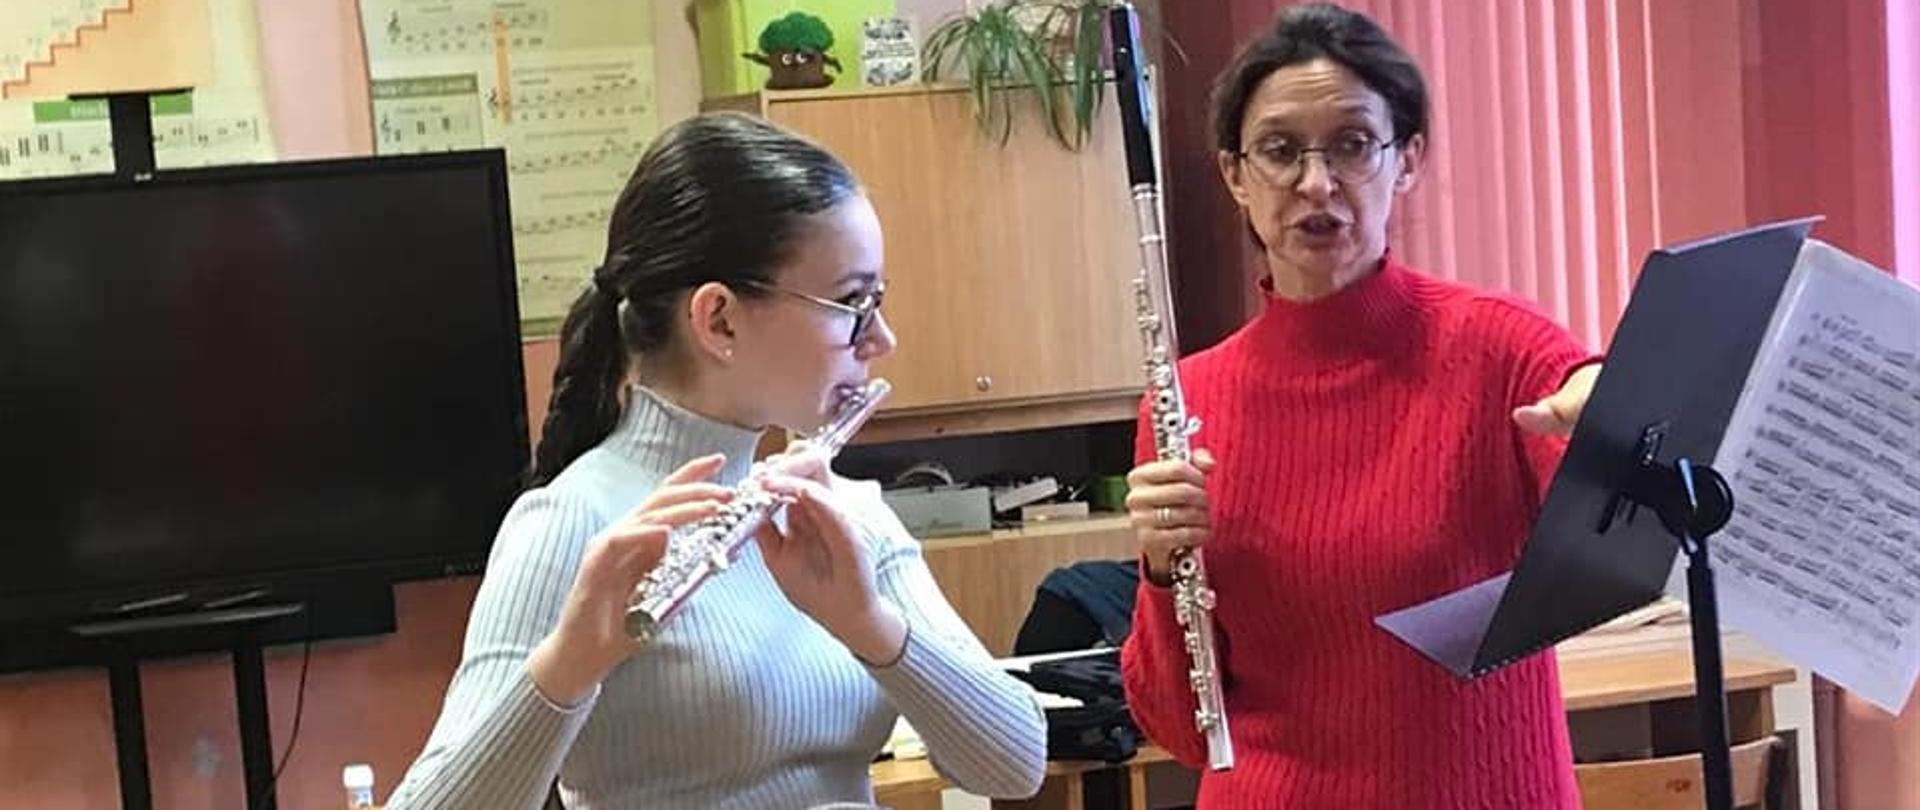 Uczennica i wykładowca p. Magda Morus-Fijałkowska grające na flecie -podczas warsztatów